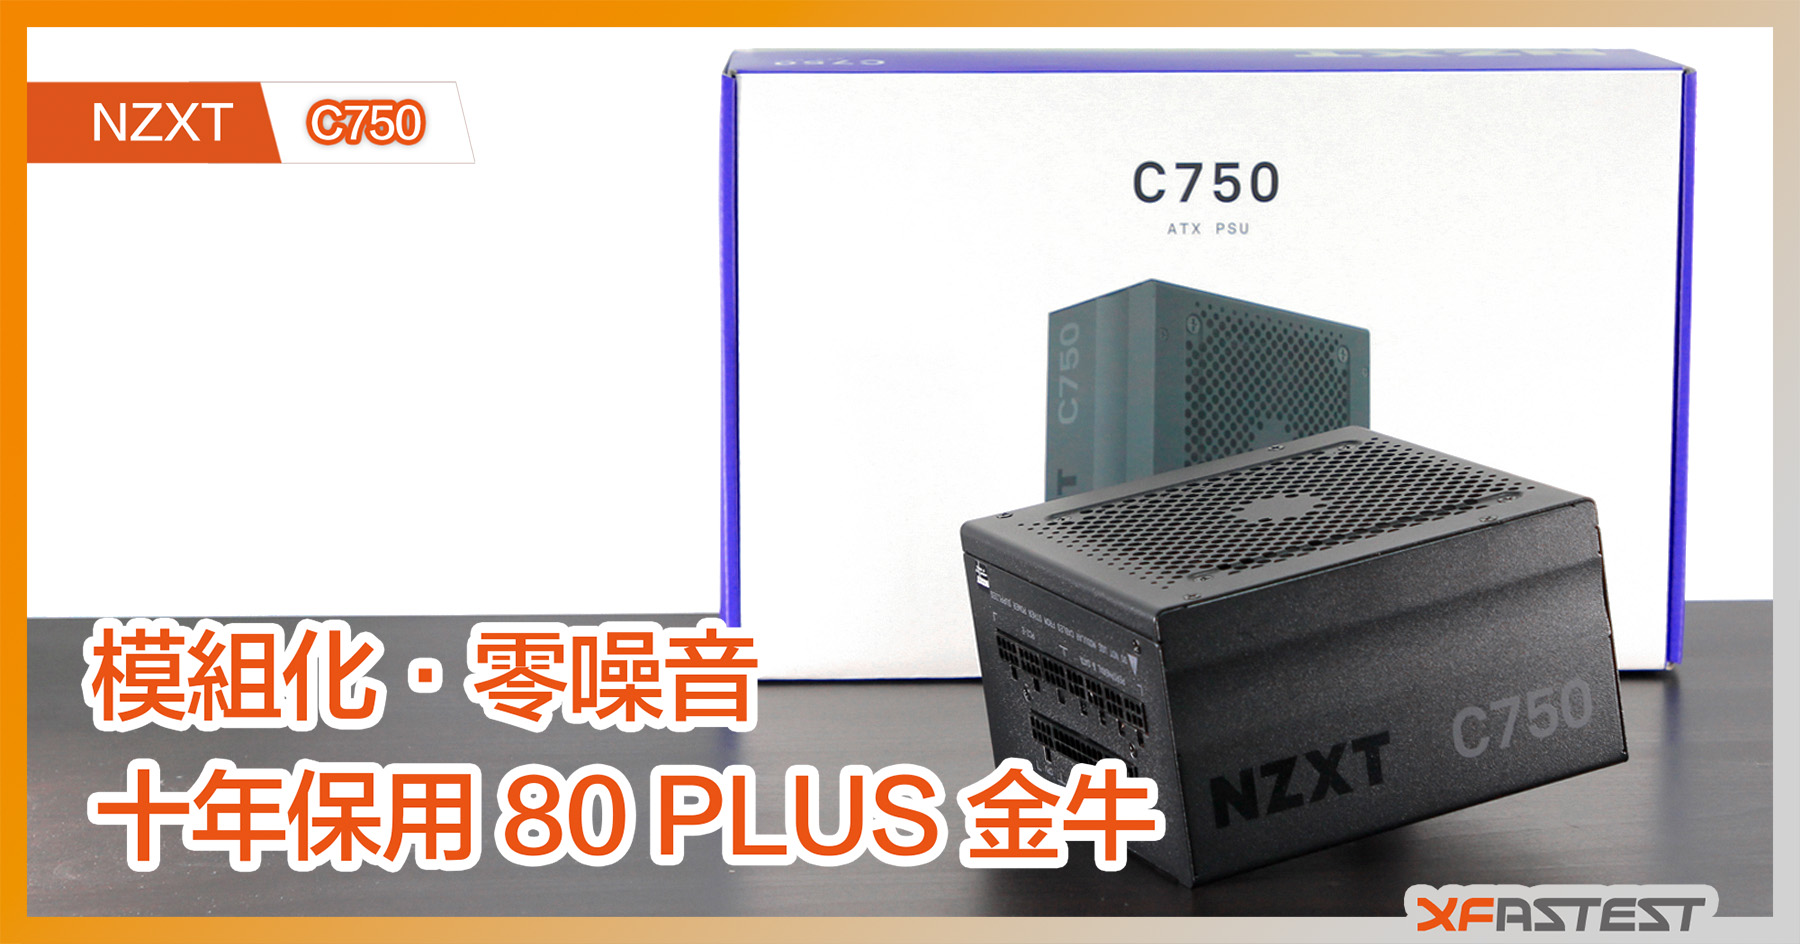 XF 開箱] 模組化‧零噪音NZXT C750 十年保用80 PLUS 金牛- XFastest 